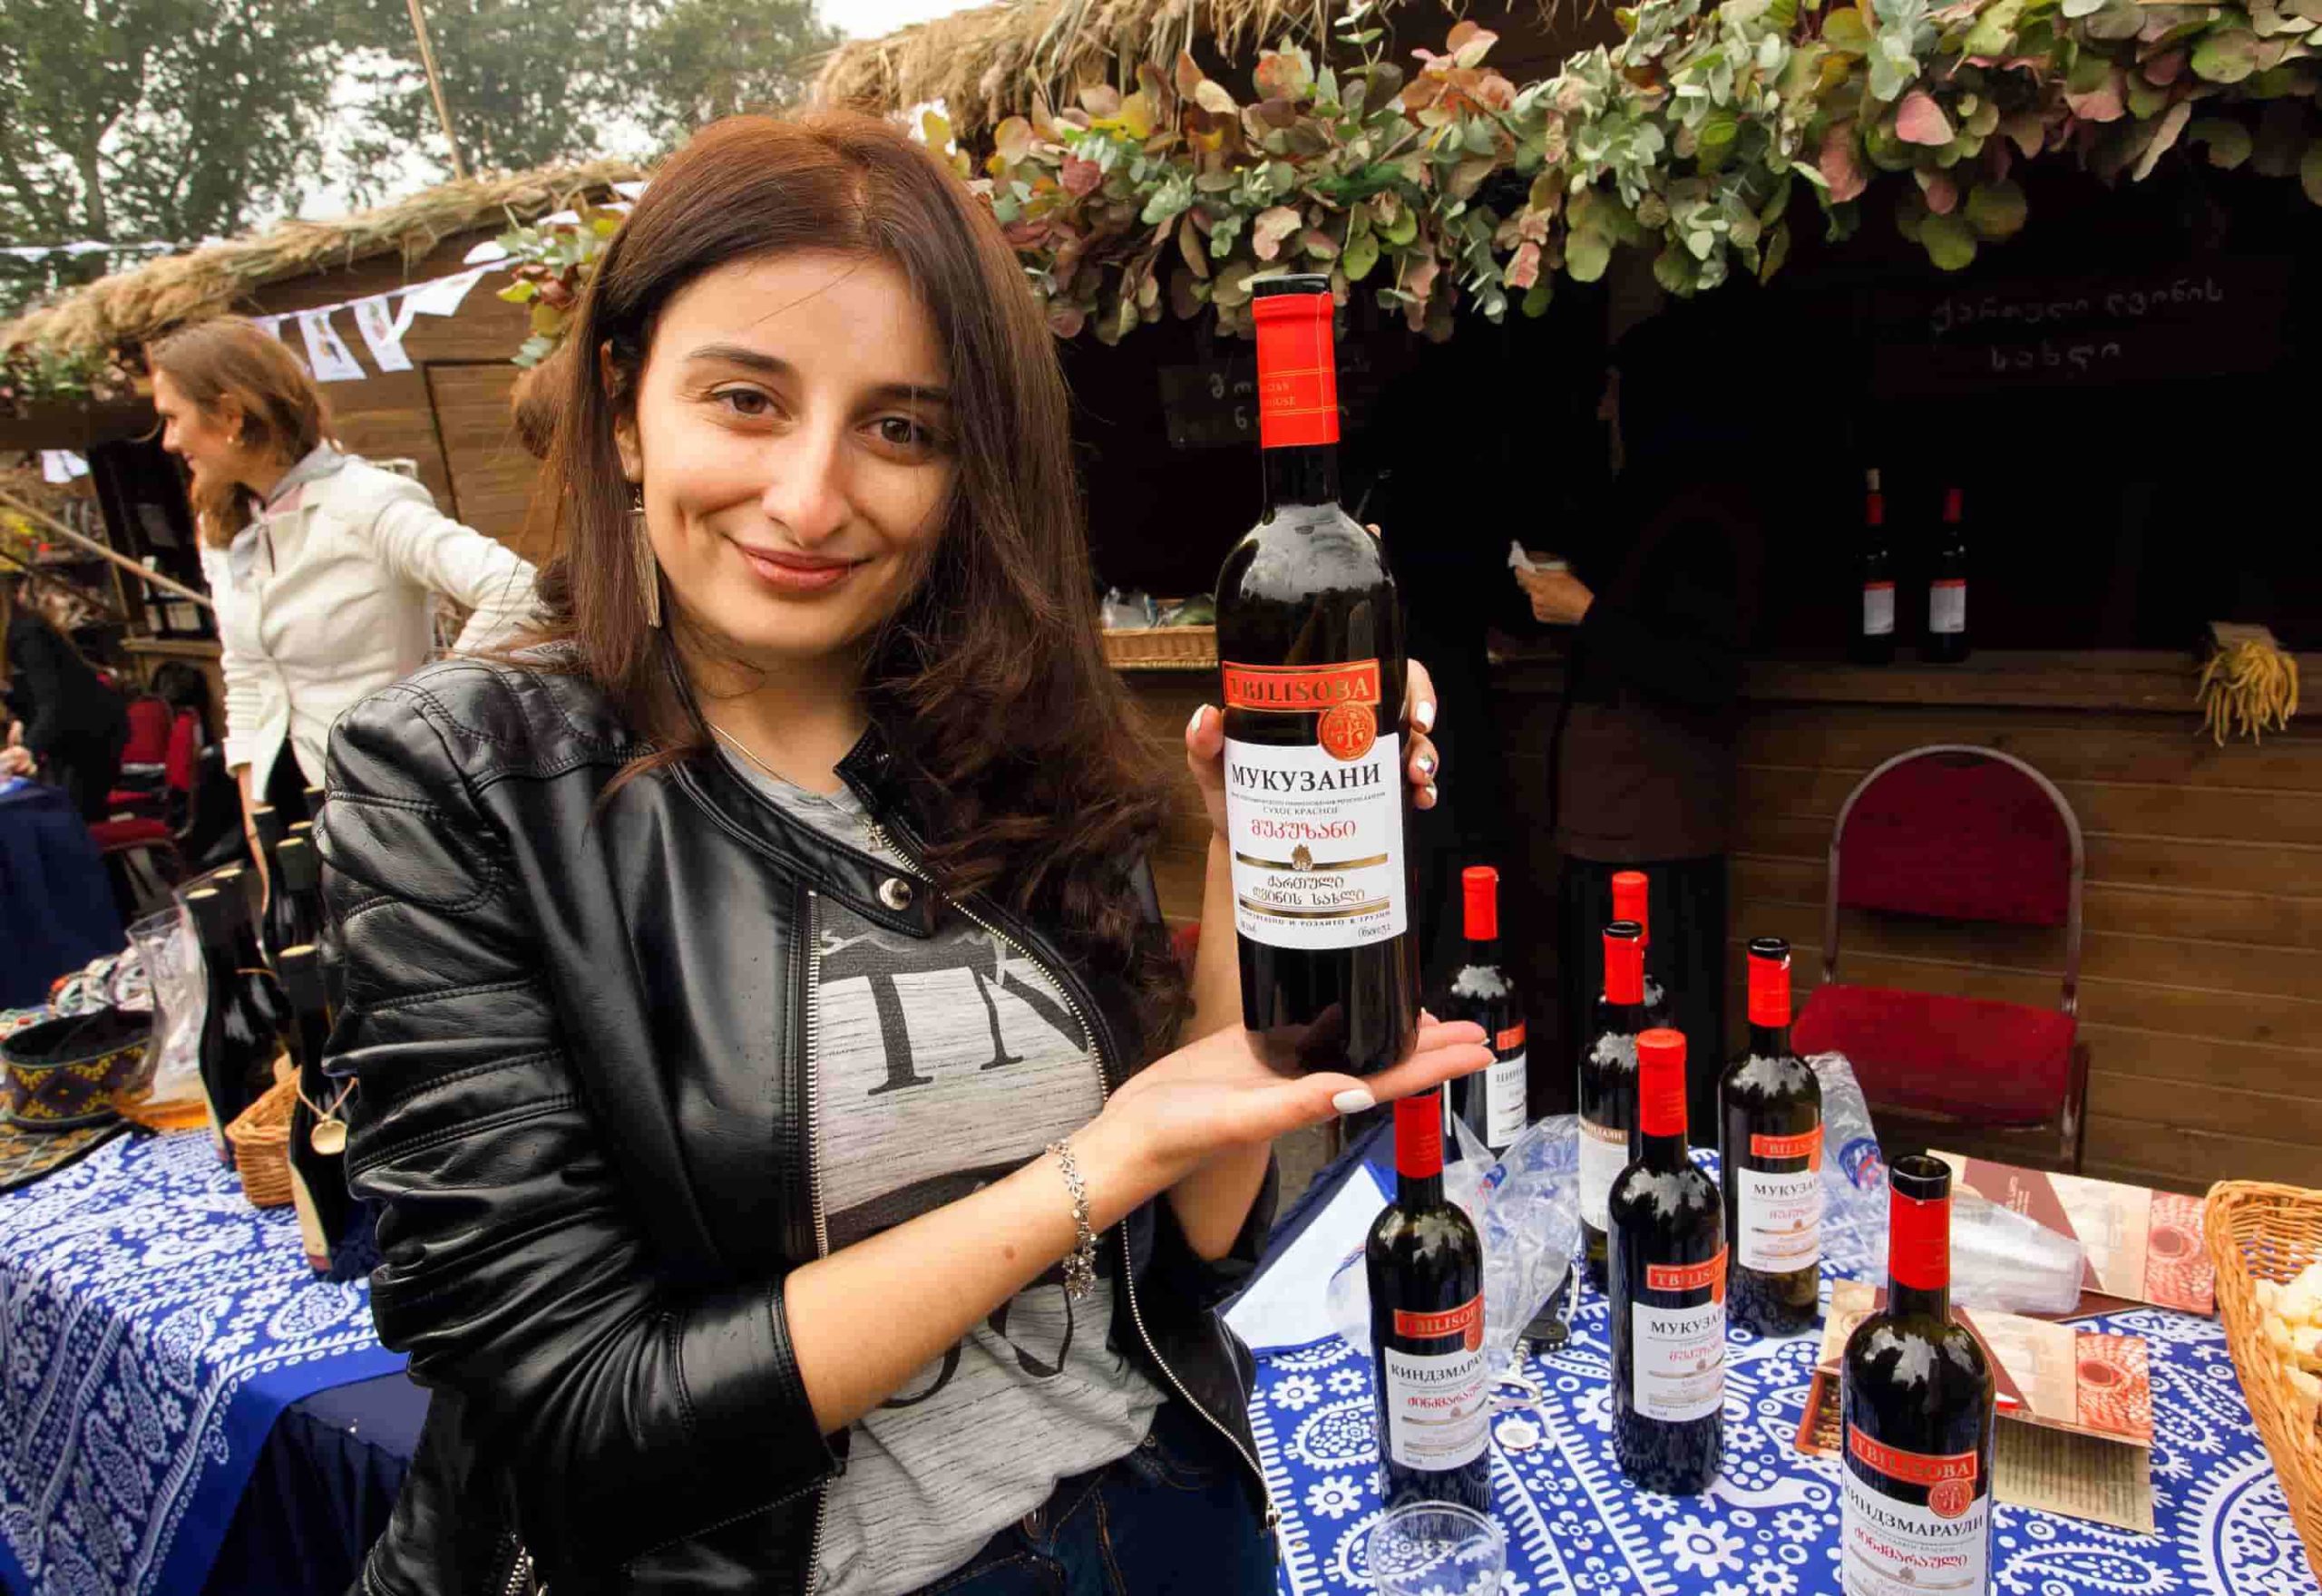 красное вино, мукузани, грузия